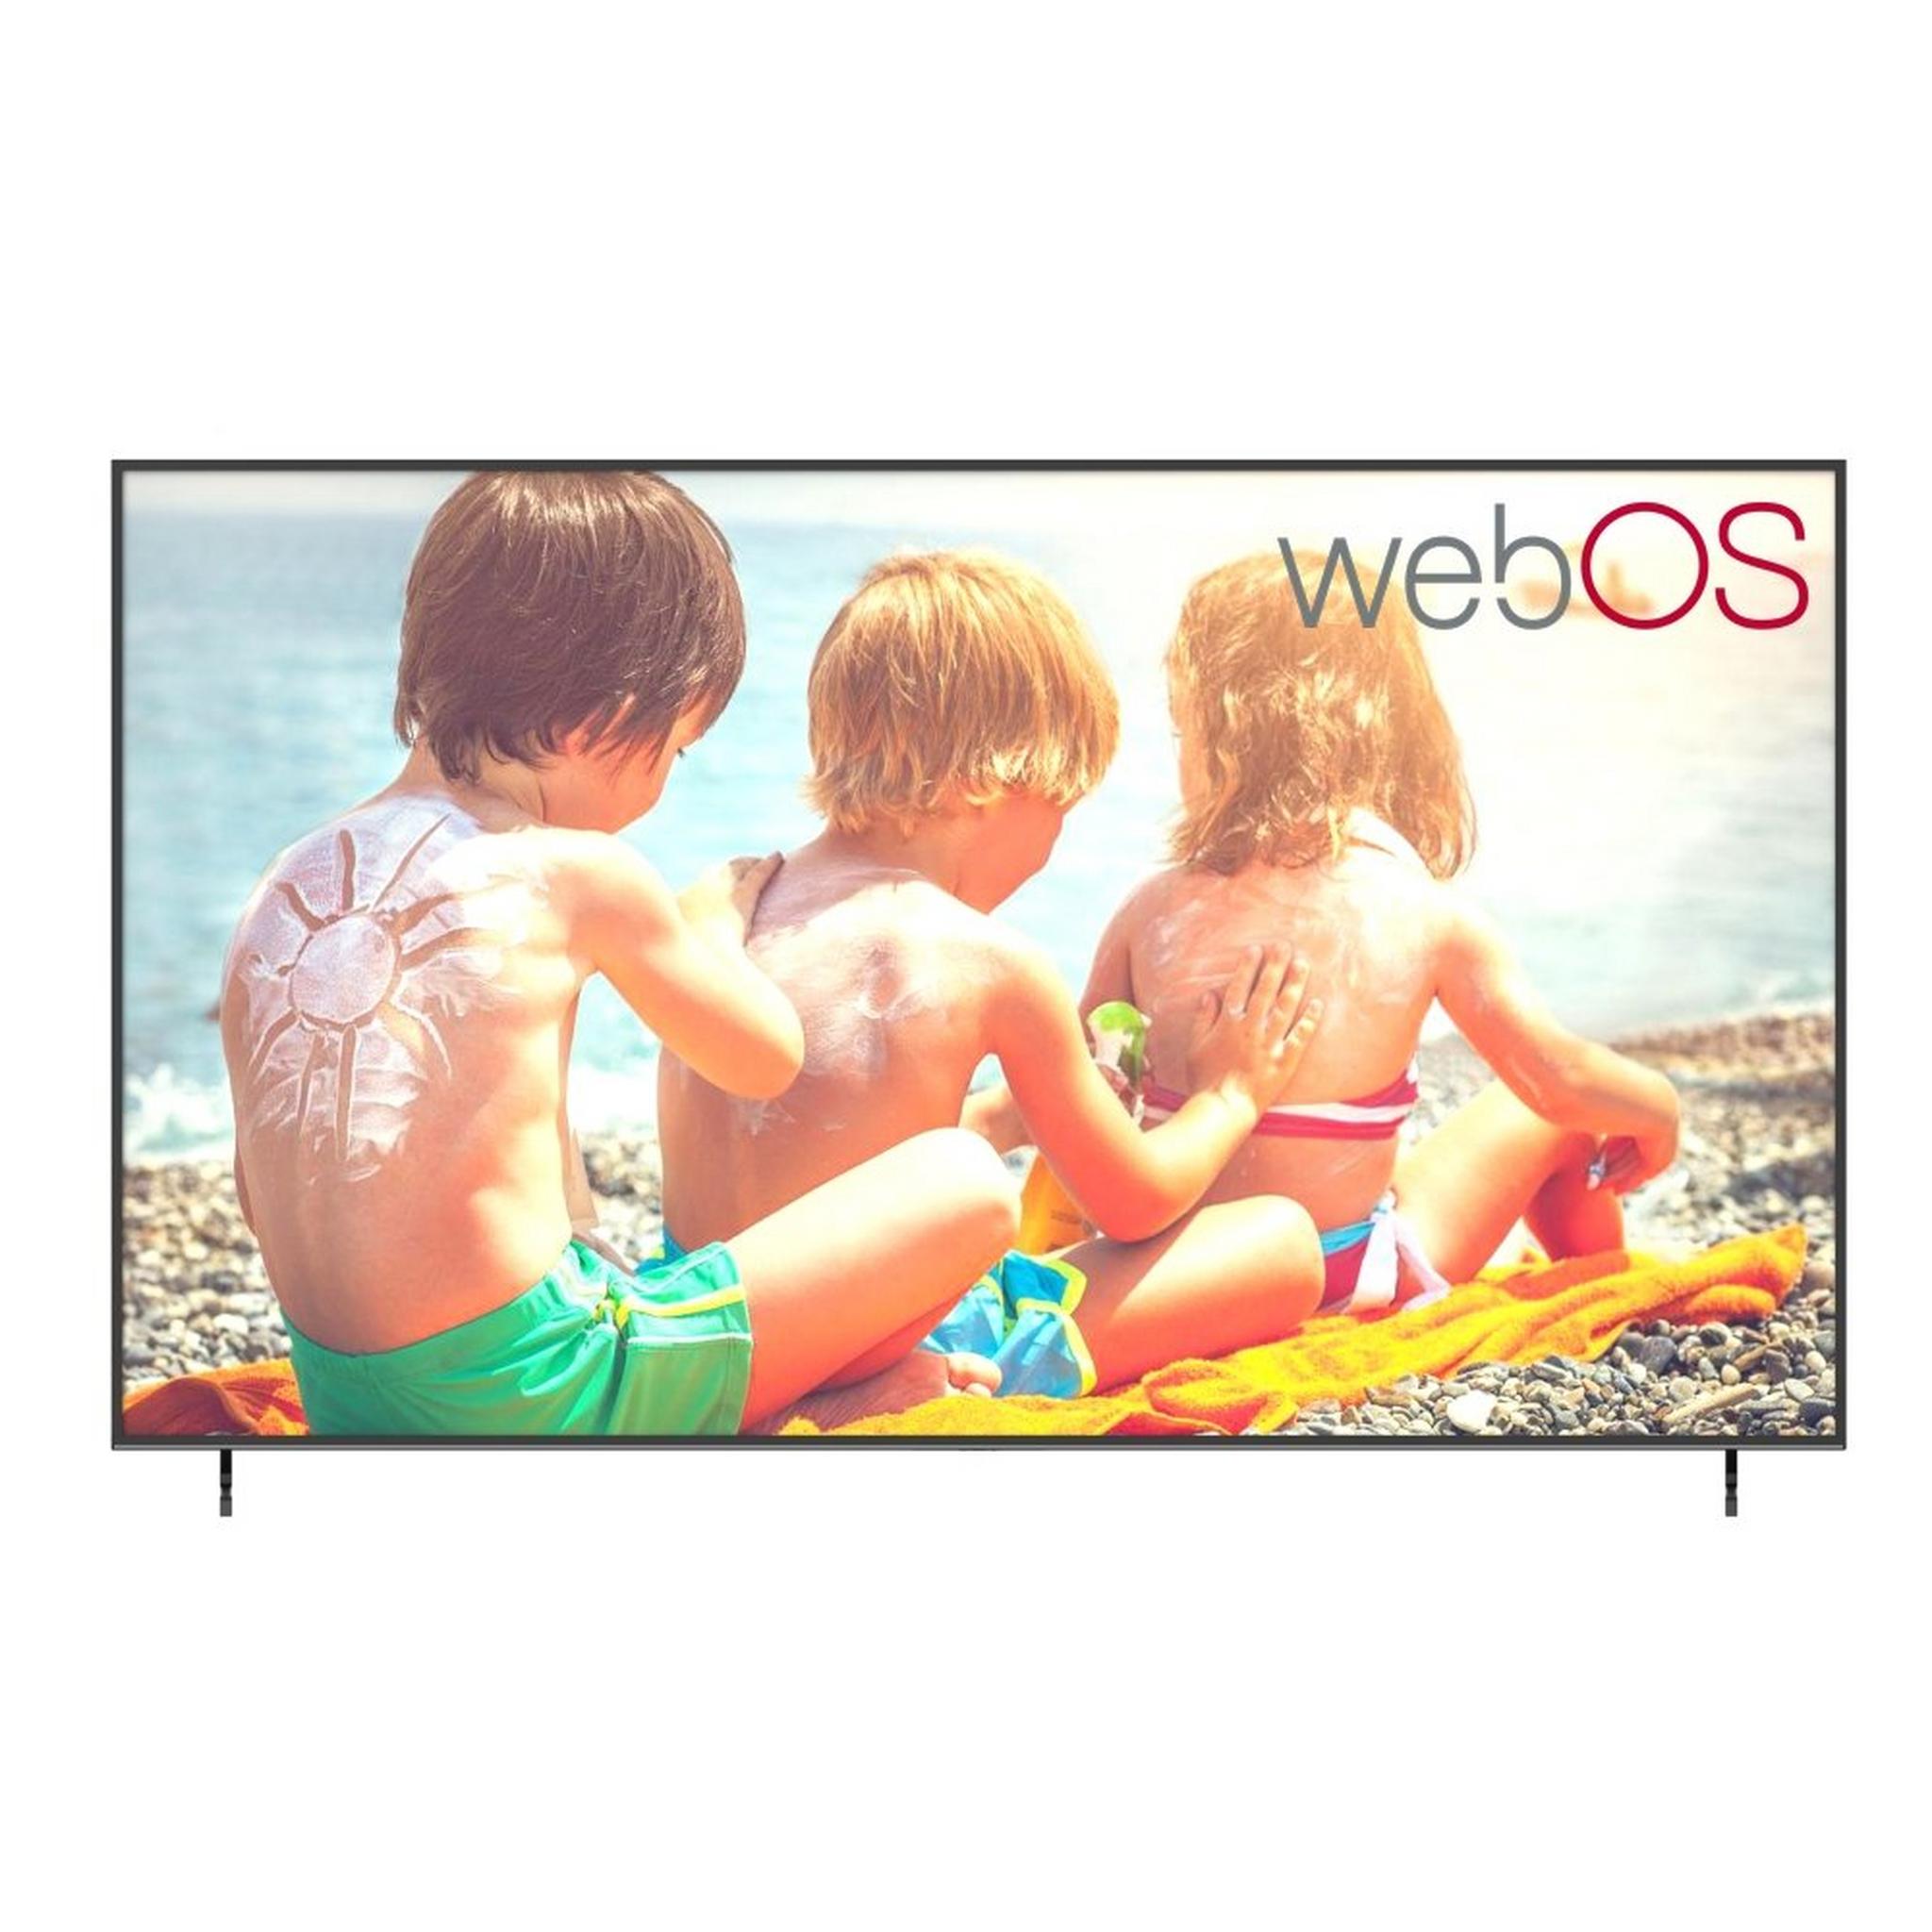 تلفزيون ونسا فائق الوضوح ذكي  ويب او اس بحجم 98 بوصة (WUD98KWO60)